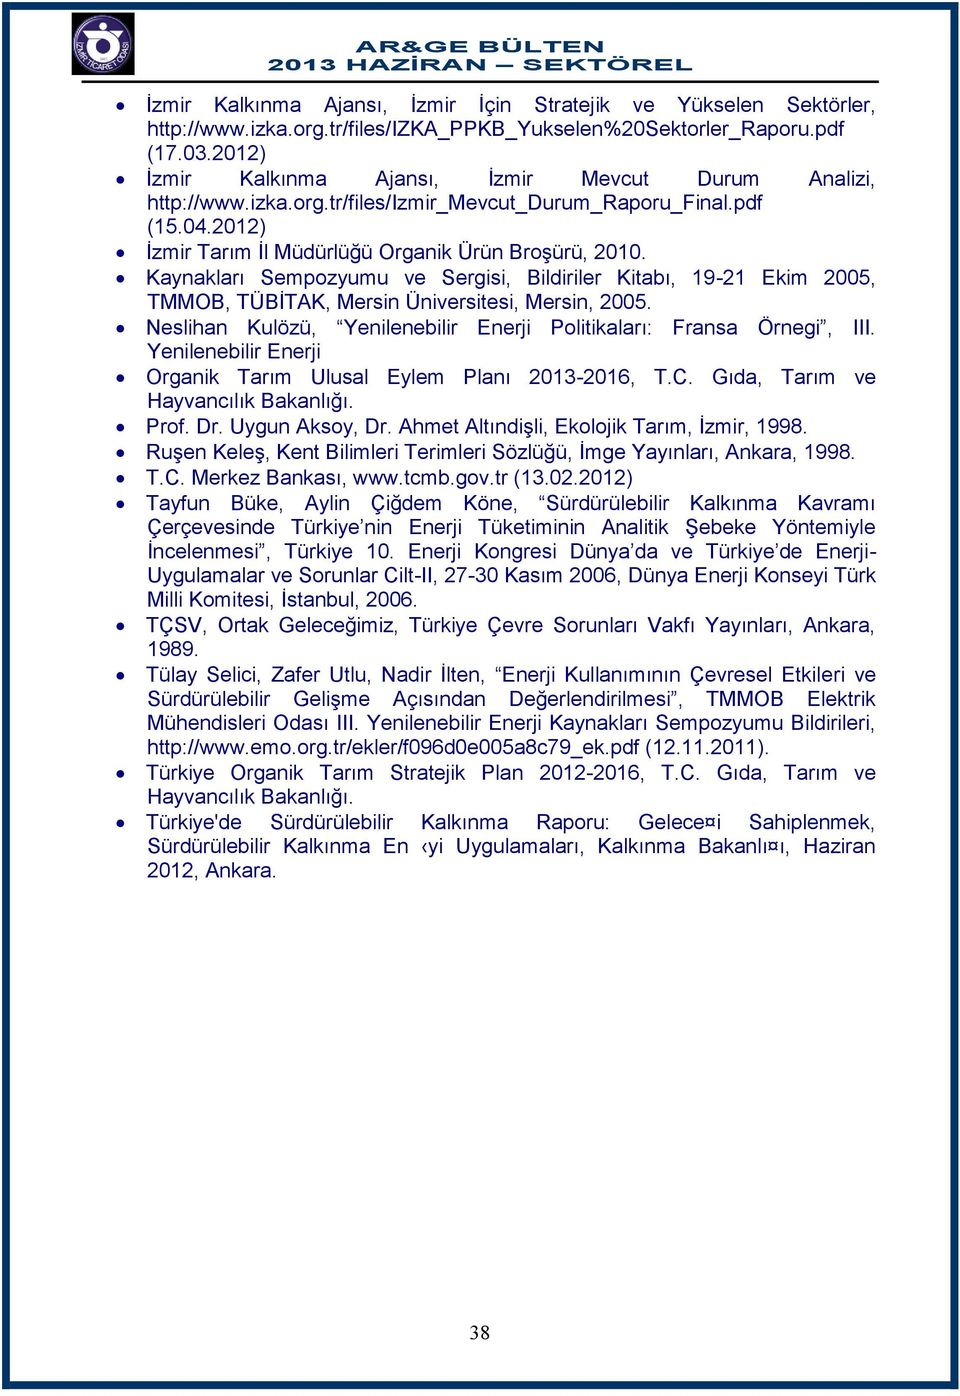 Kaynakları Sempozyumu ve Sergisi, Bildiriler Kitabı, 19-21 Ekim 2005, TMMOB, TÜBİTAK, Mersin Üniversitesi, Mersin, 2005. Neslihan Kulözü, Yenilenebilir Enerji Politikaları: Fransa Örnegi, III.